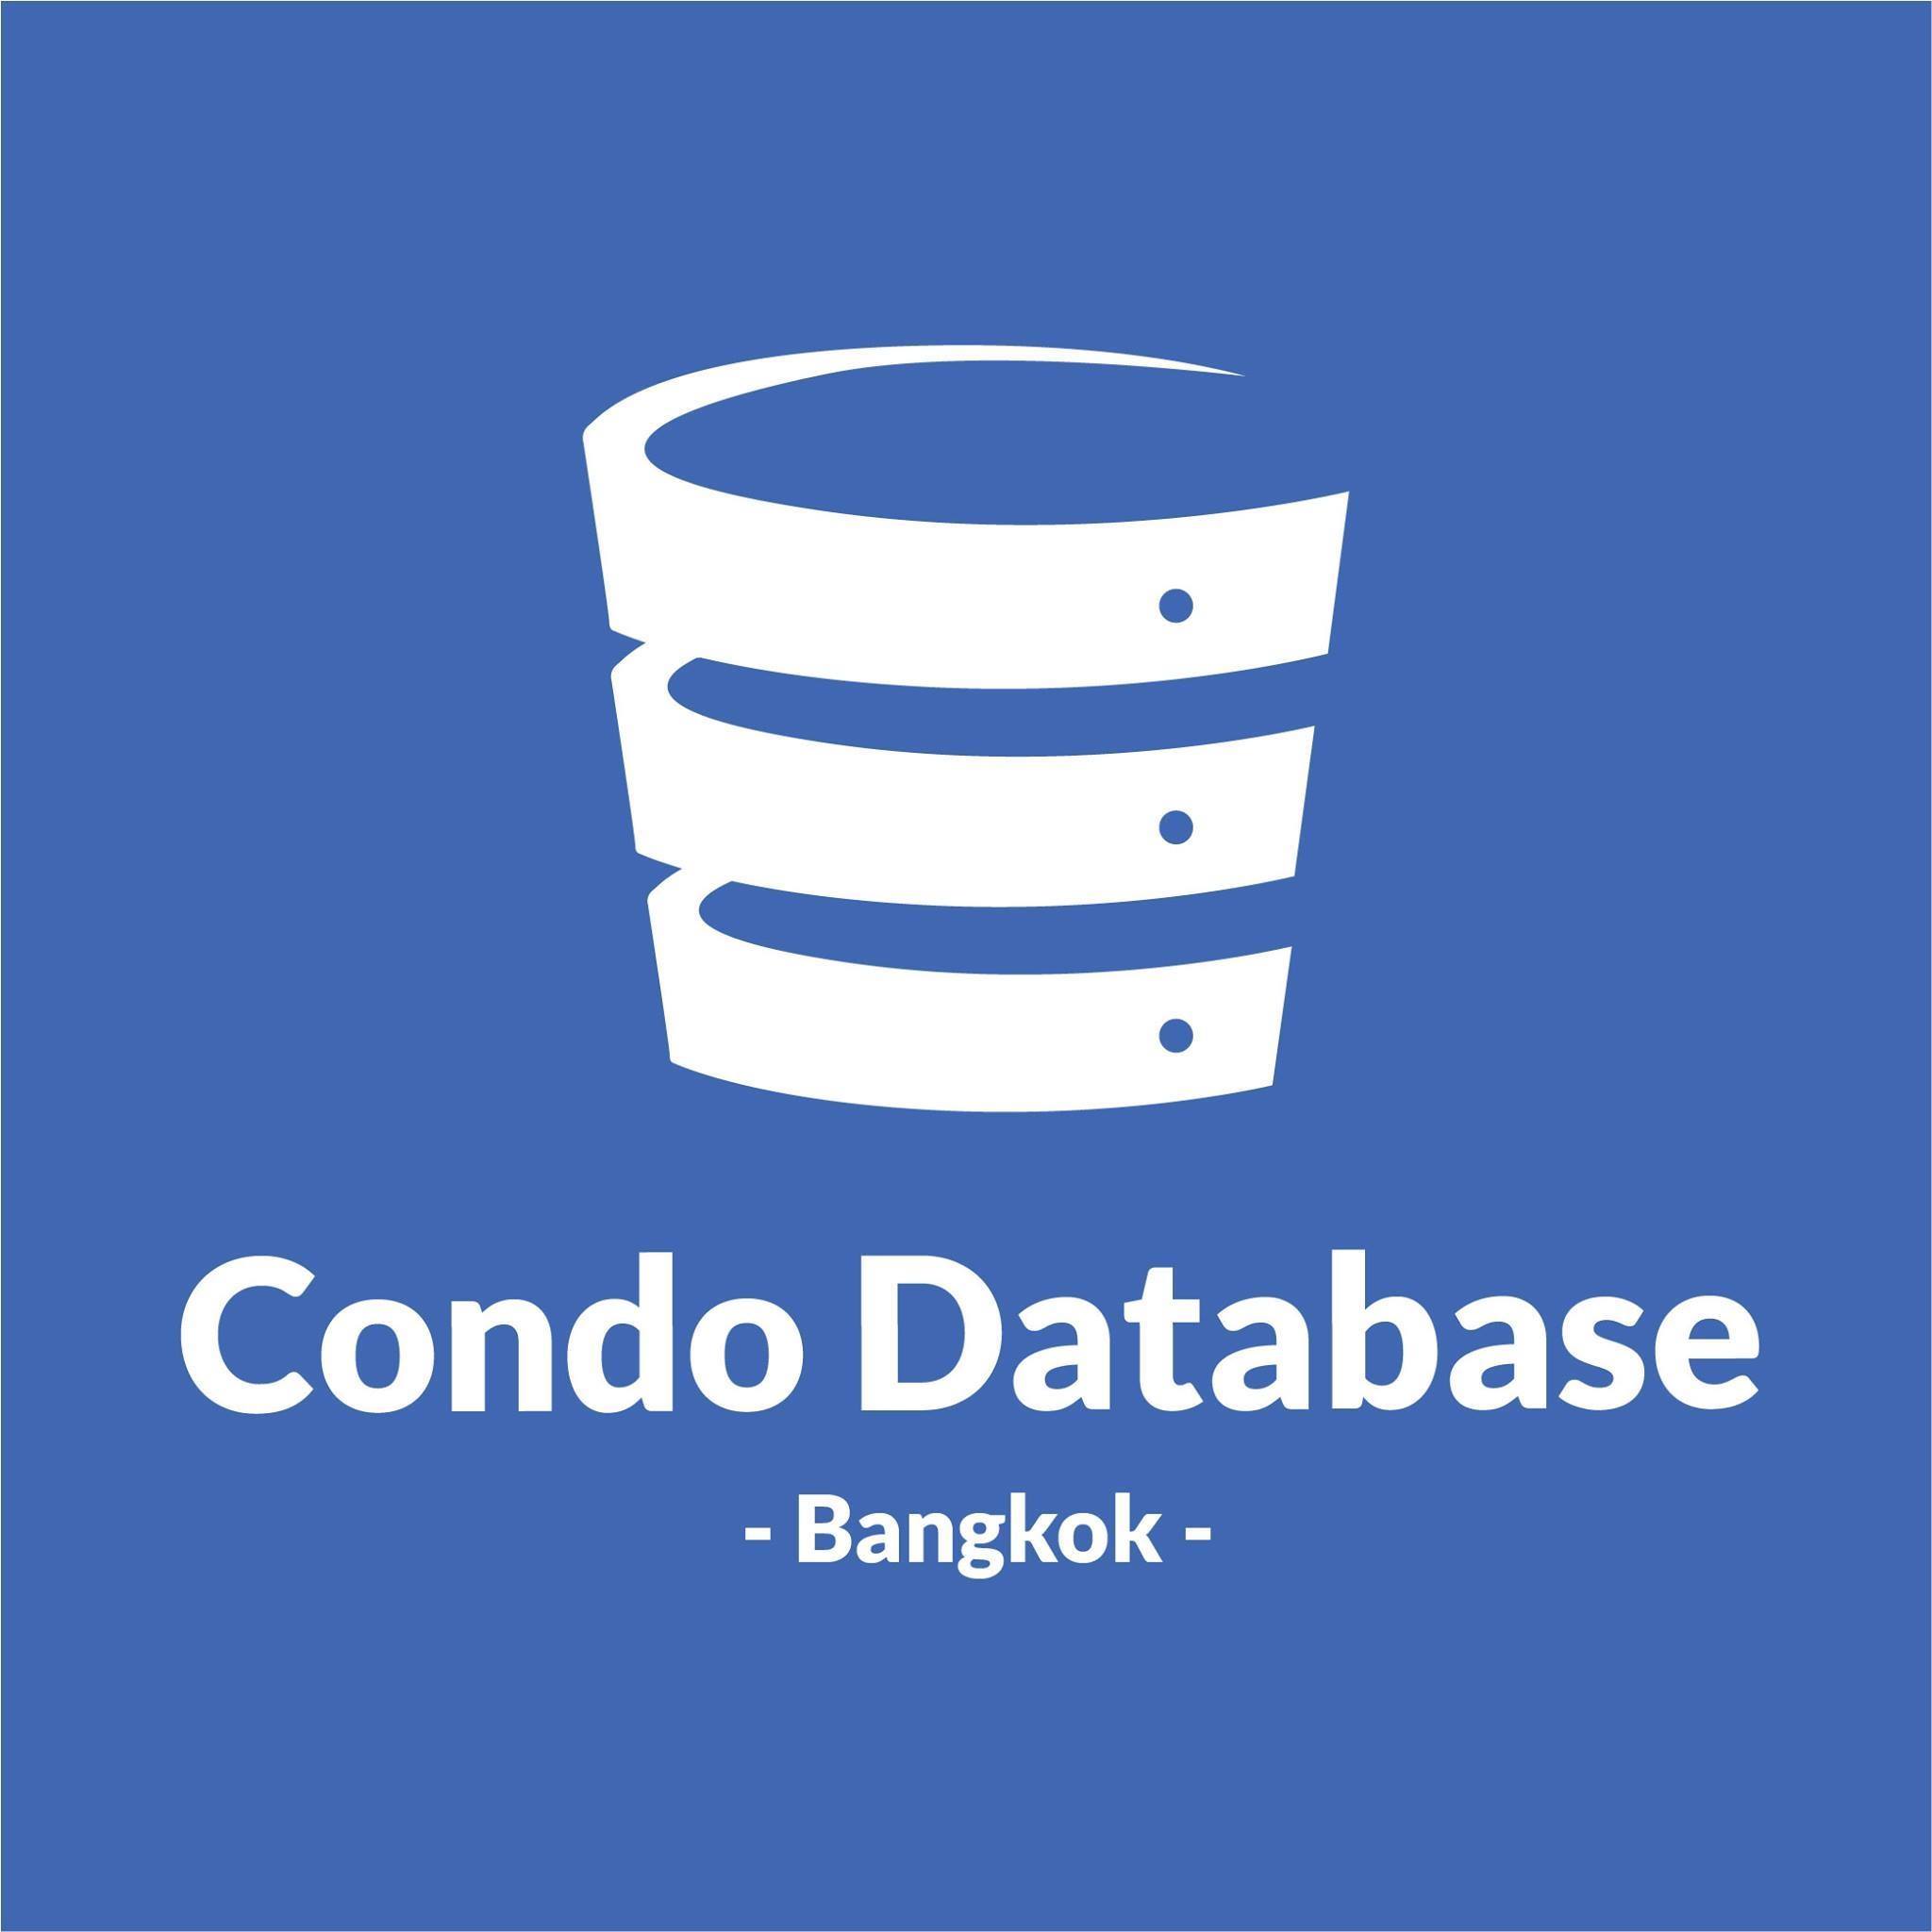 Condo Database logo